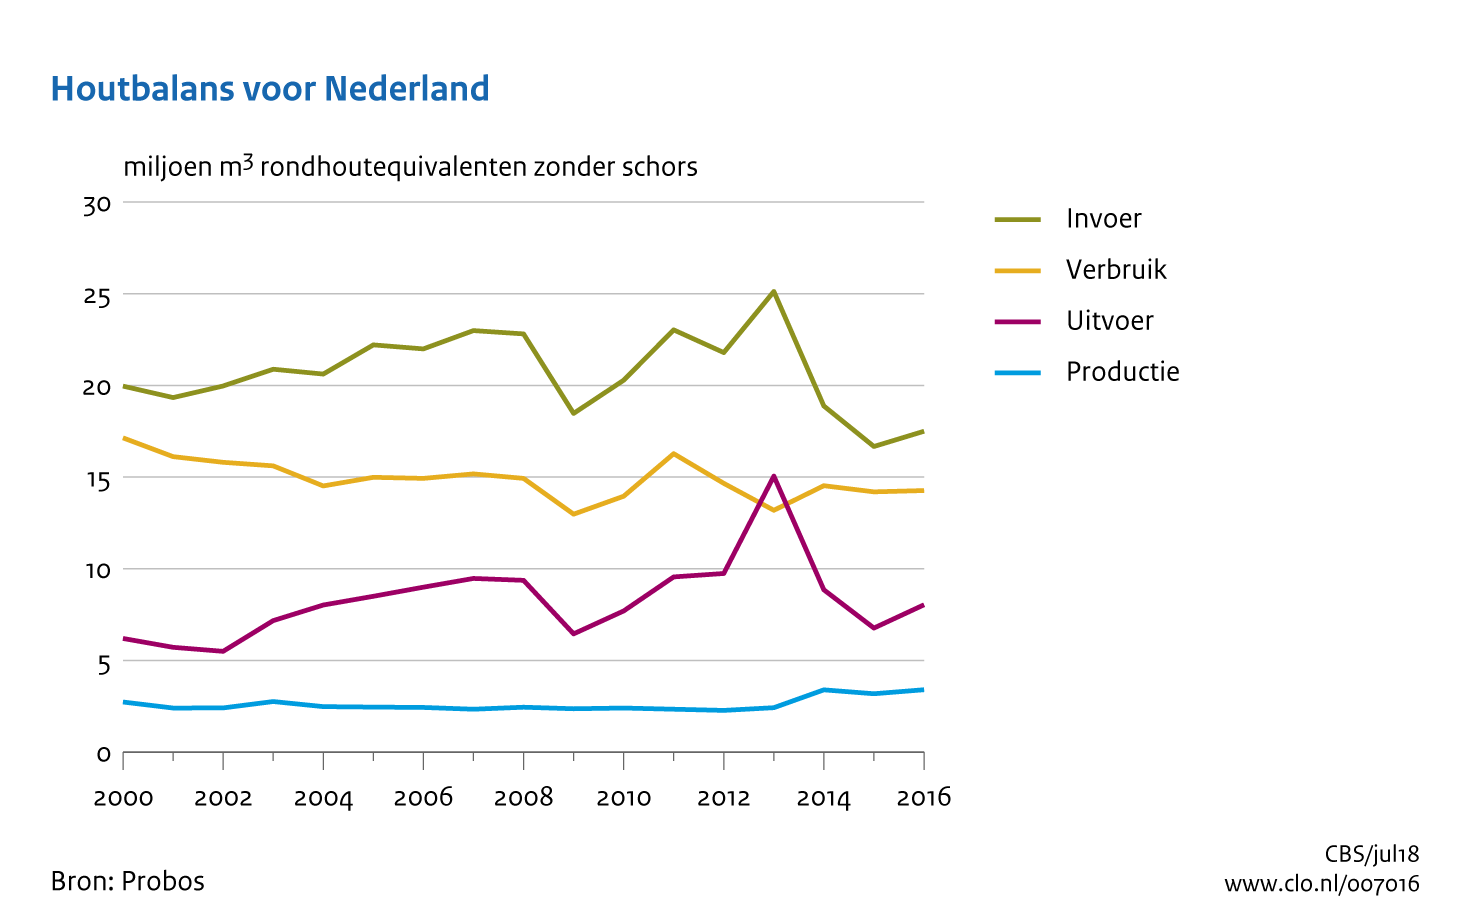 Figuur Houtbalans voor Nederland (productie, invoer, uitvoer, verbruik van hout). In de rest van de tekst wordt deze figuur uitgebreider uitgelegd.